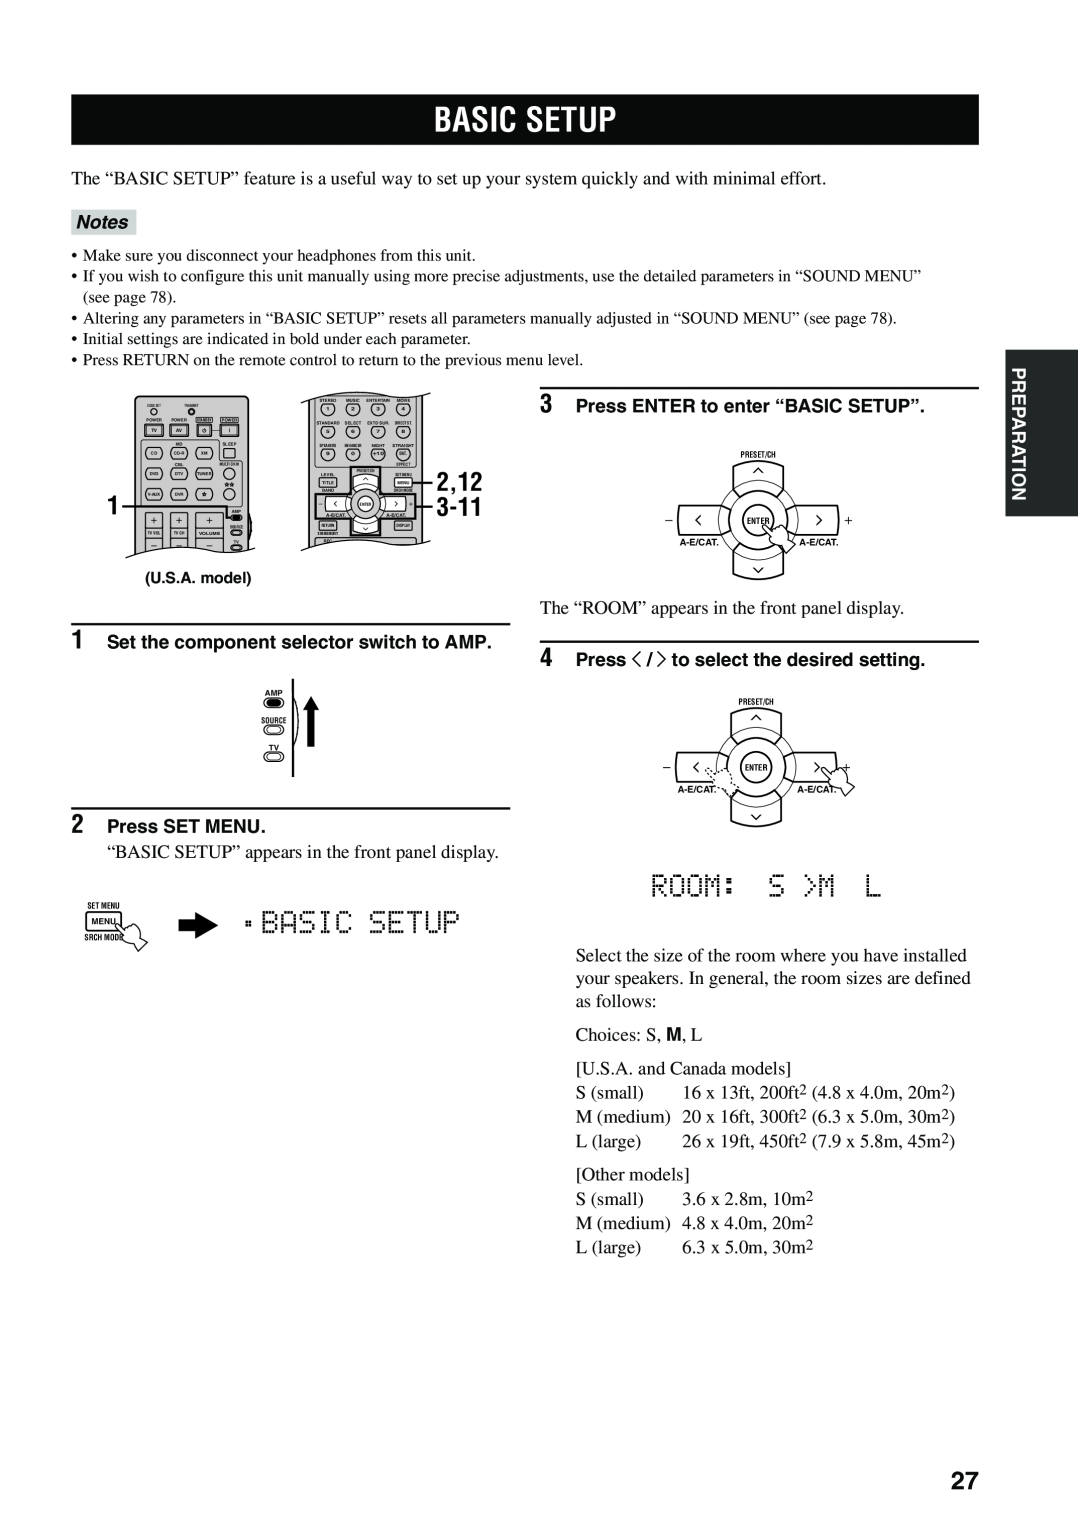 Yamaha HTR-5940 AV owner manual Basic Setup, Room S M L, Notes, Press ENTER to enter “BASIC SETUP”, 2Press SET MENU 